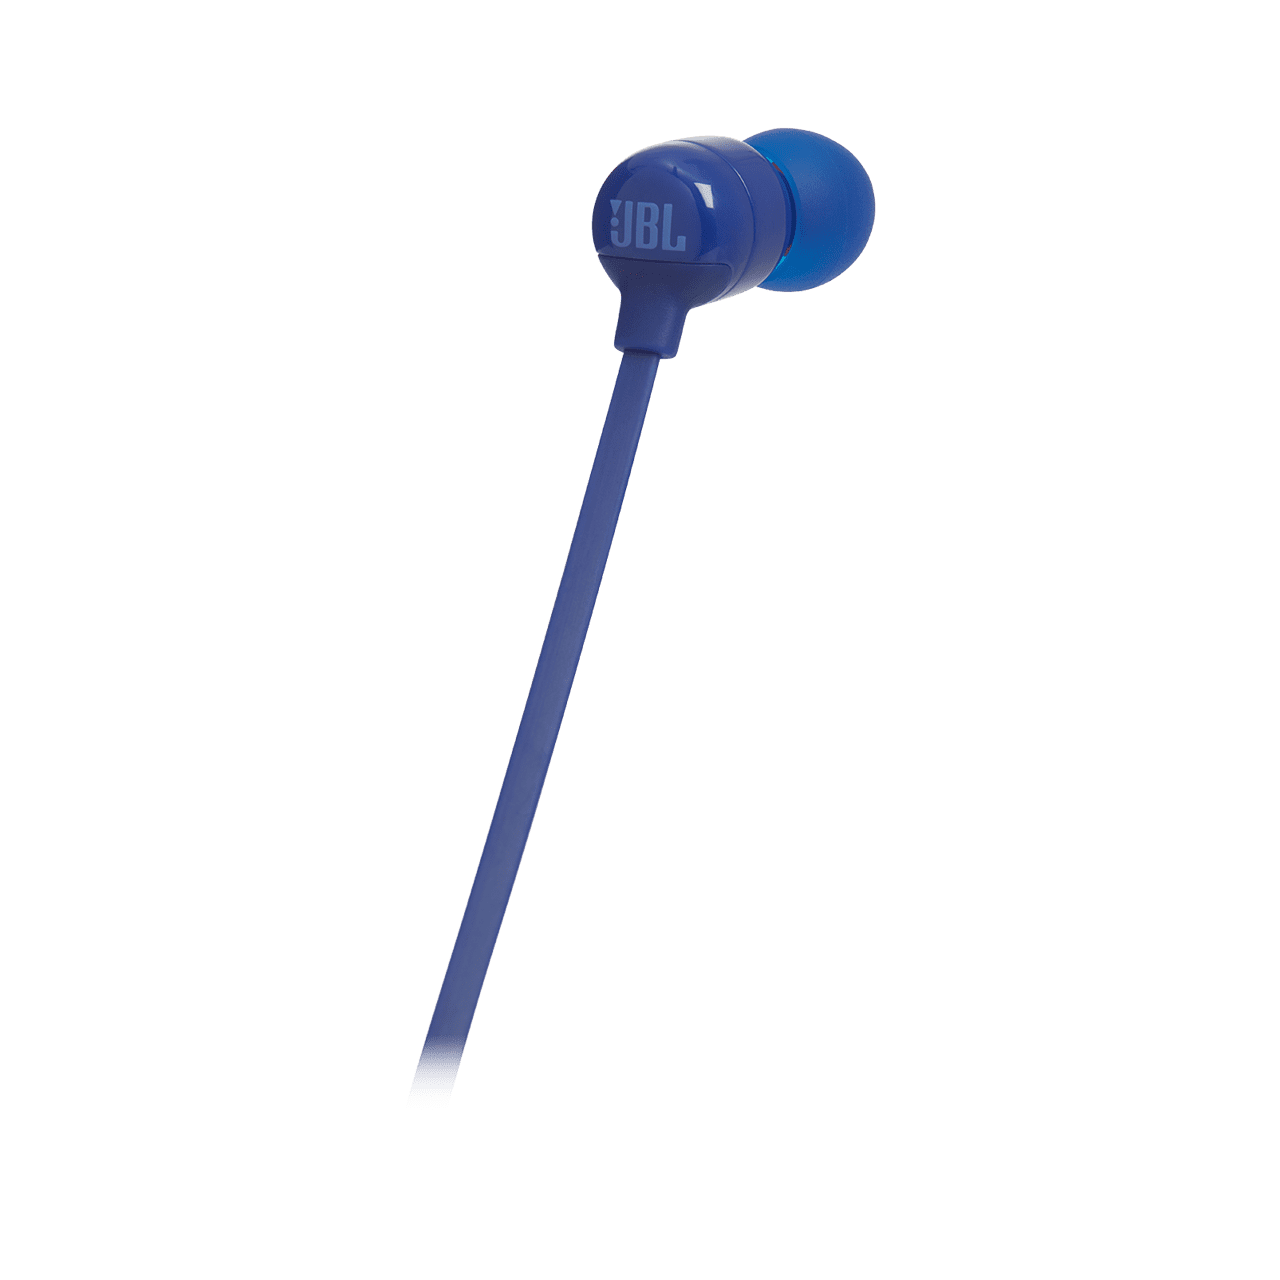 JBL T110 Universal In-Ear with \\ zmienisz | Tytuł GSM blue Wired Headphones Słuchawki (kopia) headphones Wired headphones Biały \\ sklepu Słuchawki Remote | \\ and w Control \\ SEO RTV Microphone dziale \\ MODERACJA